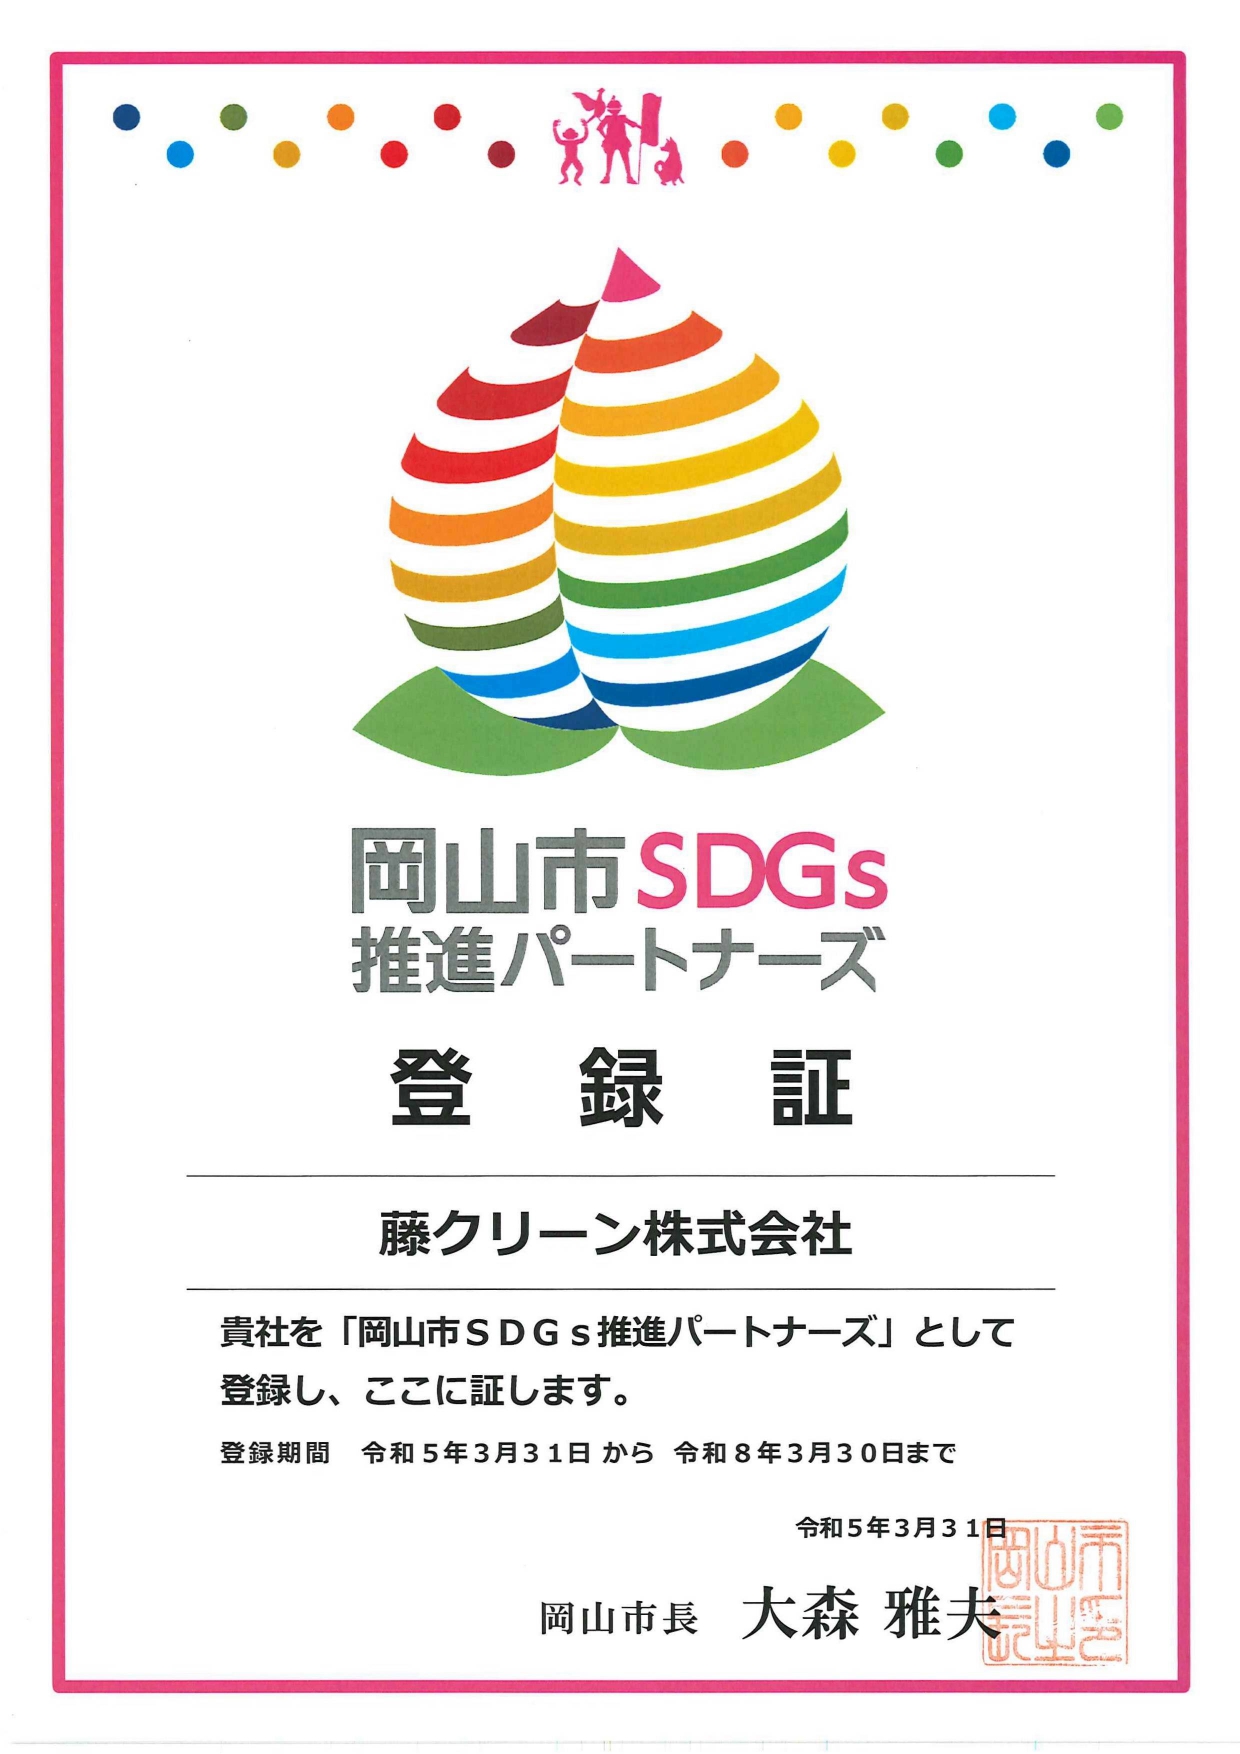 『岡山市SDGs推進パートナーズ』に登録されました